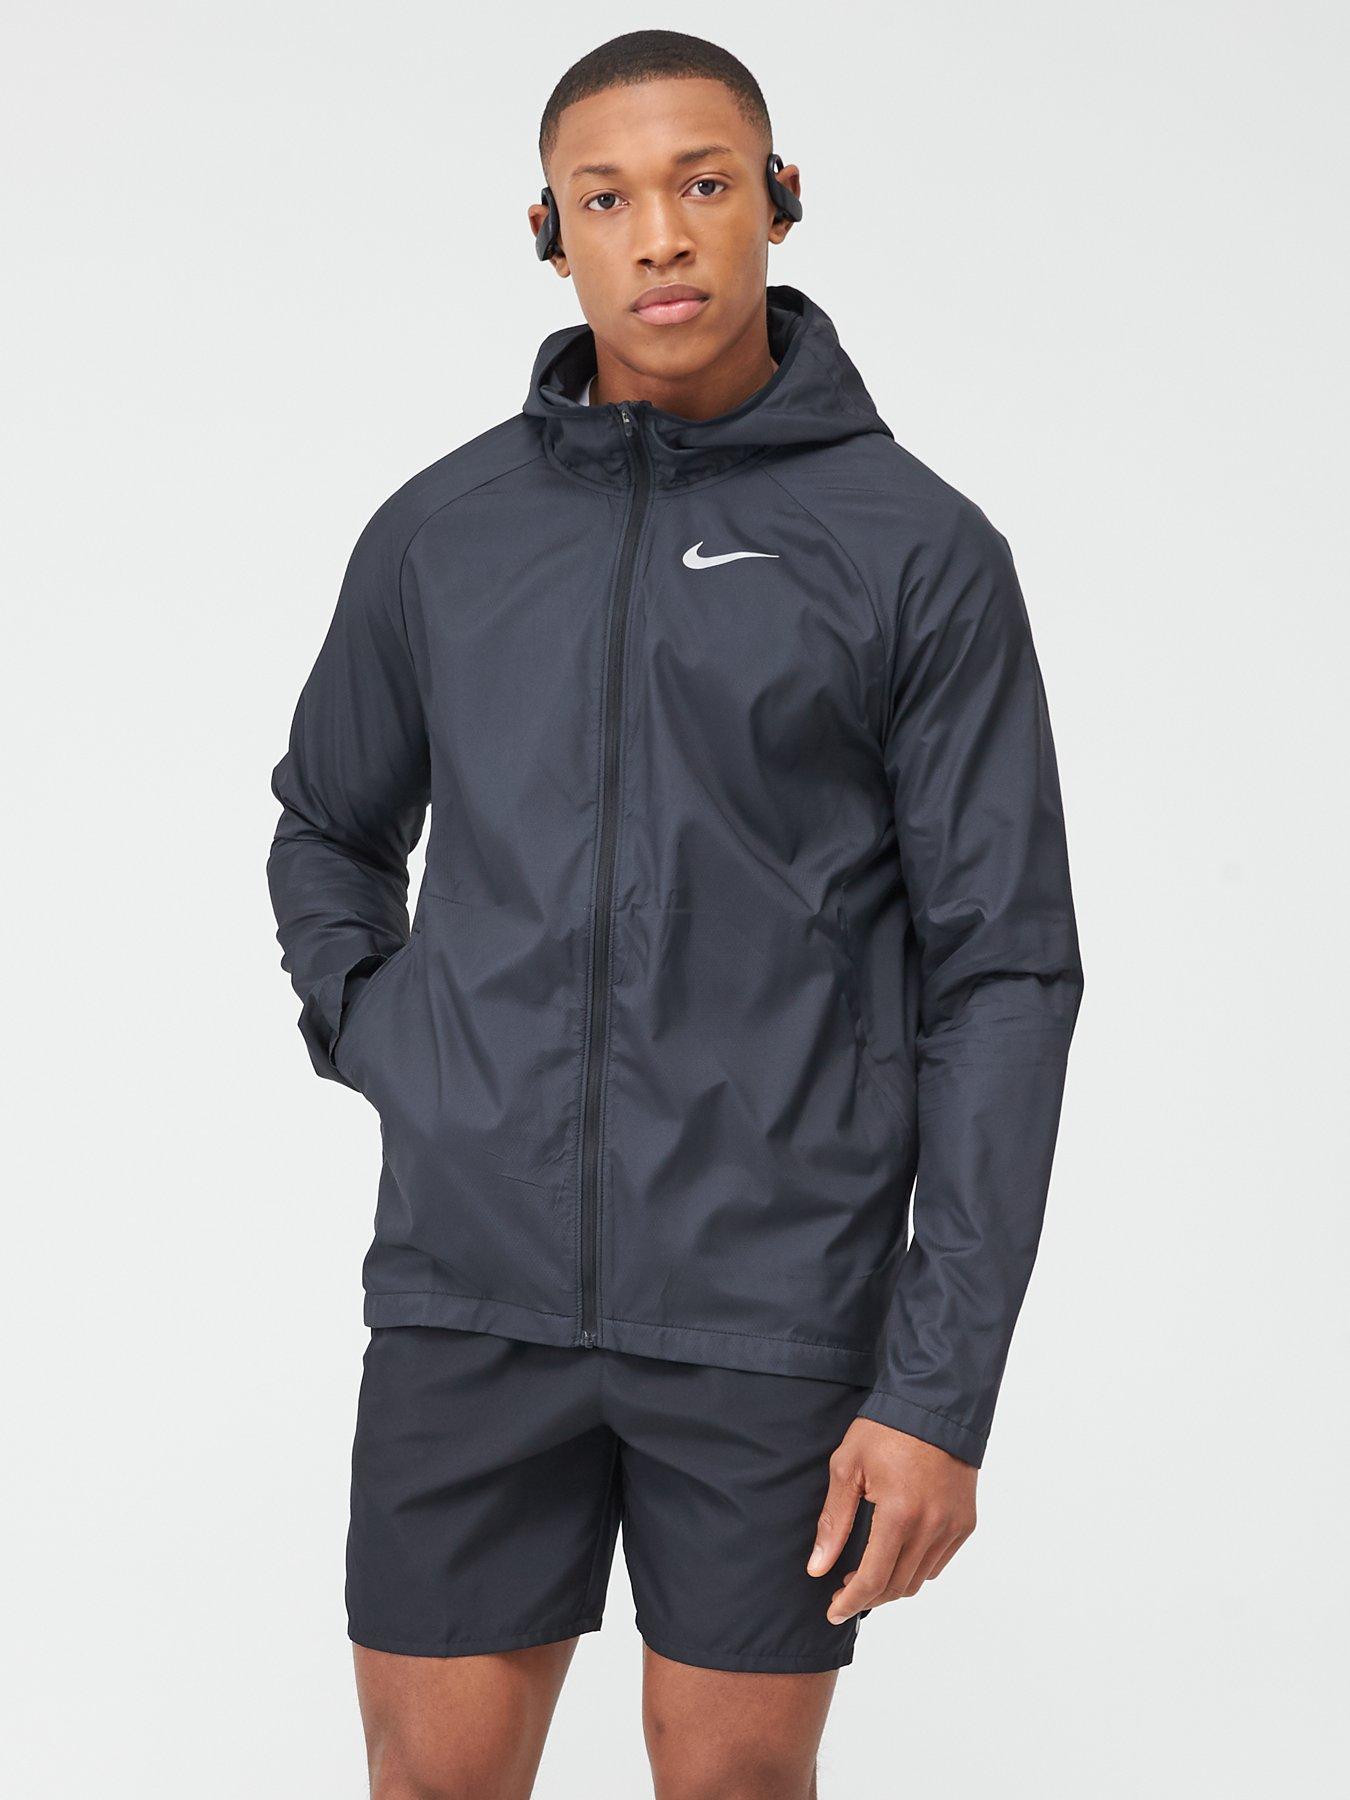 men's running jacket nike essential